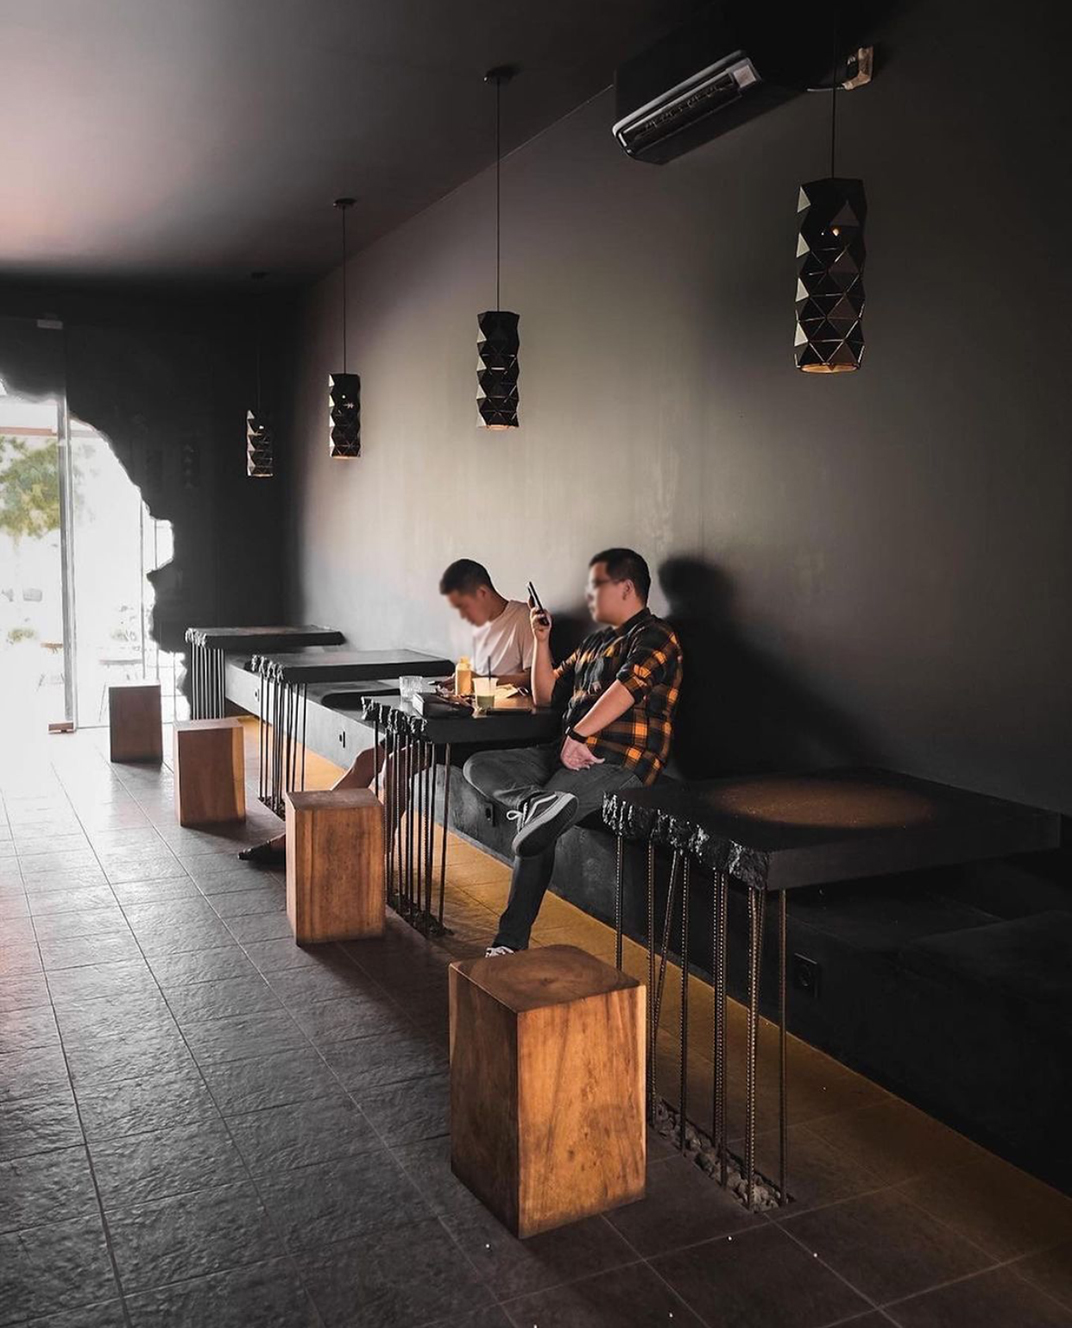 万隆咖啡店Kurokoffee 印度尼西亚 万隆 咖啡店 黑色 插画 图案 石子 沙子 logo设计 vi设计 空间设计